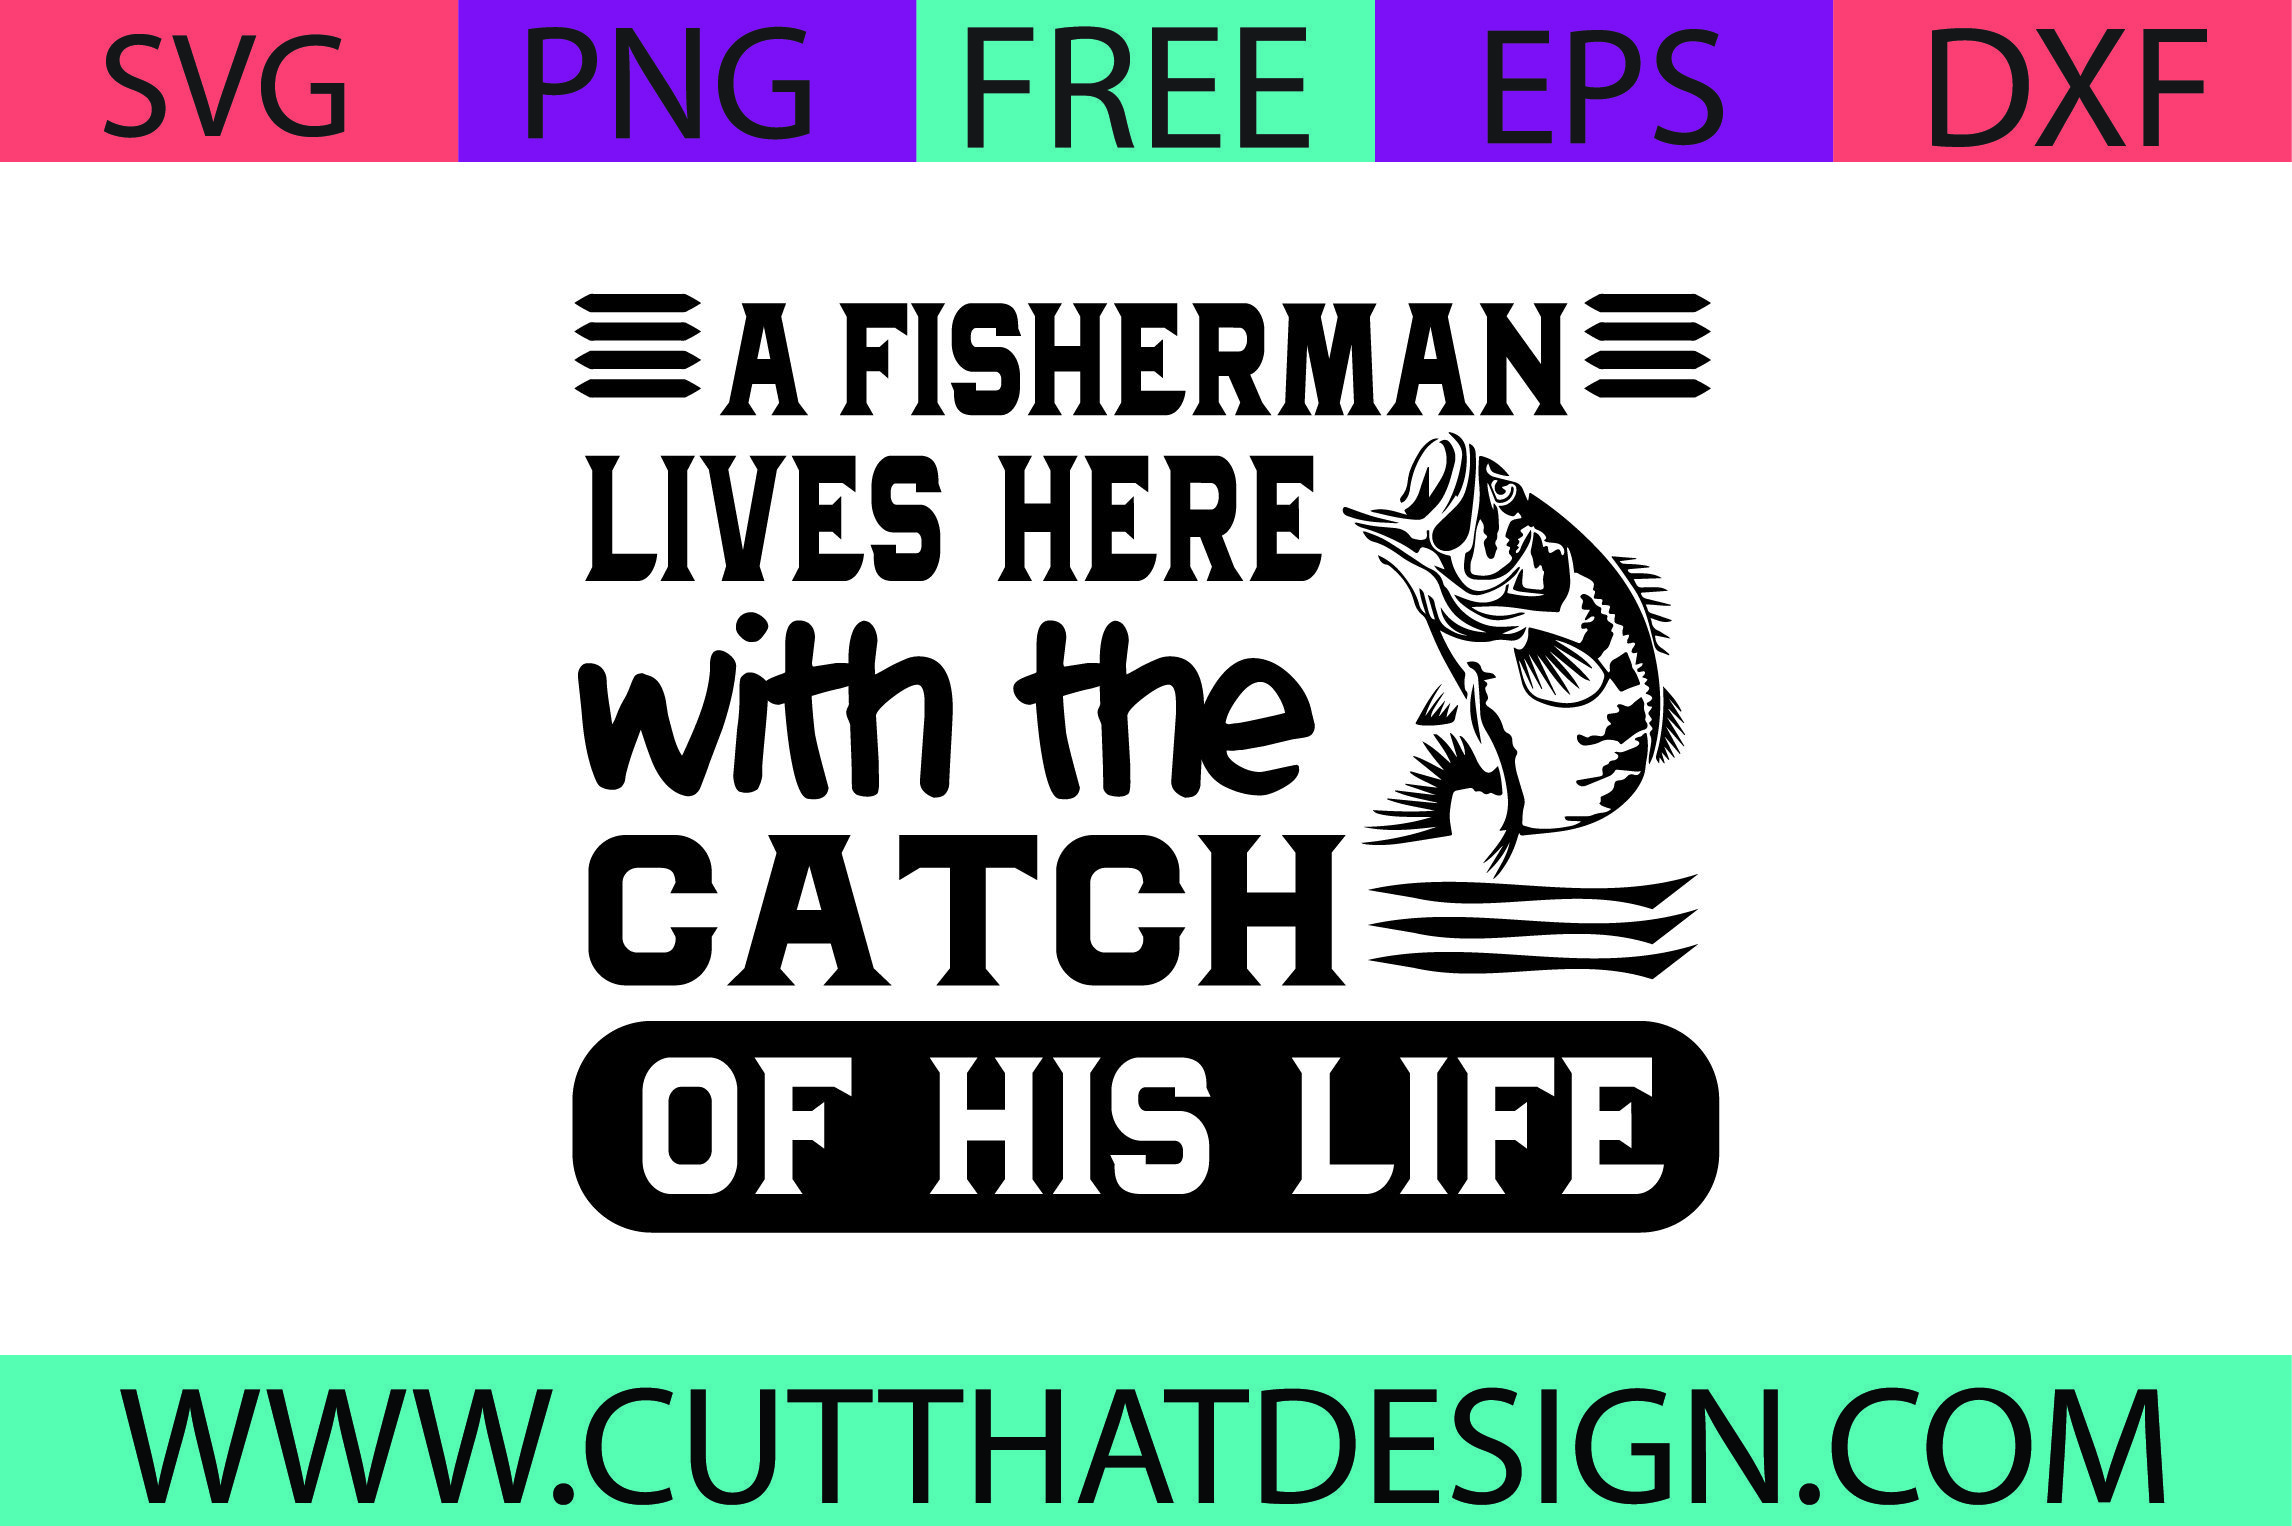 Free Fishing SVG